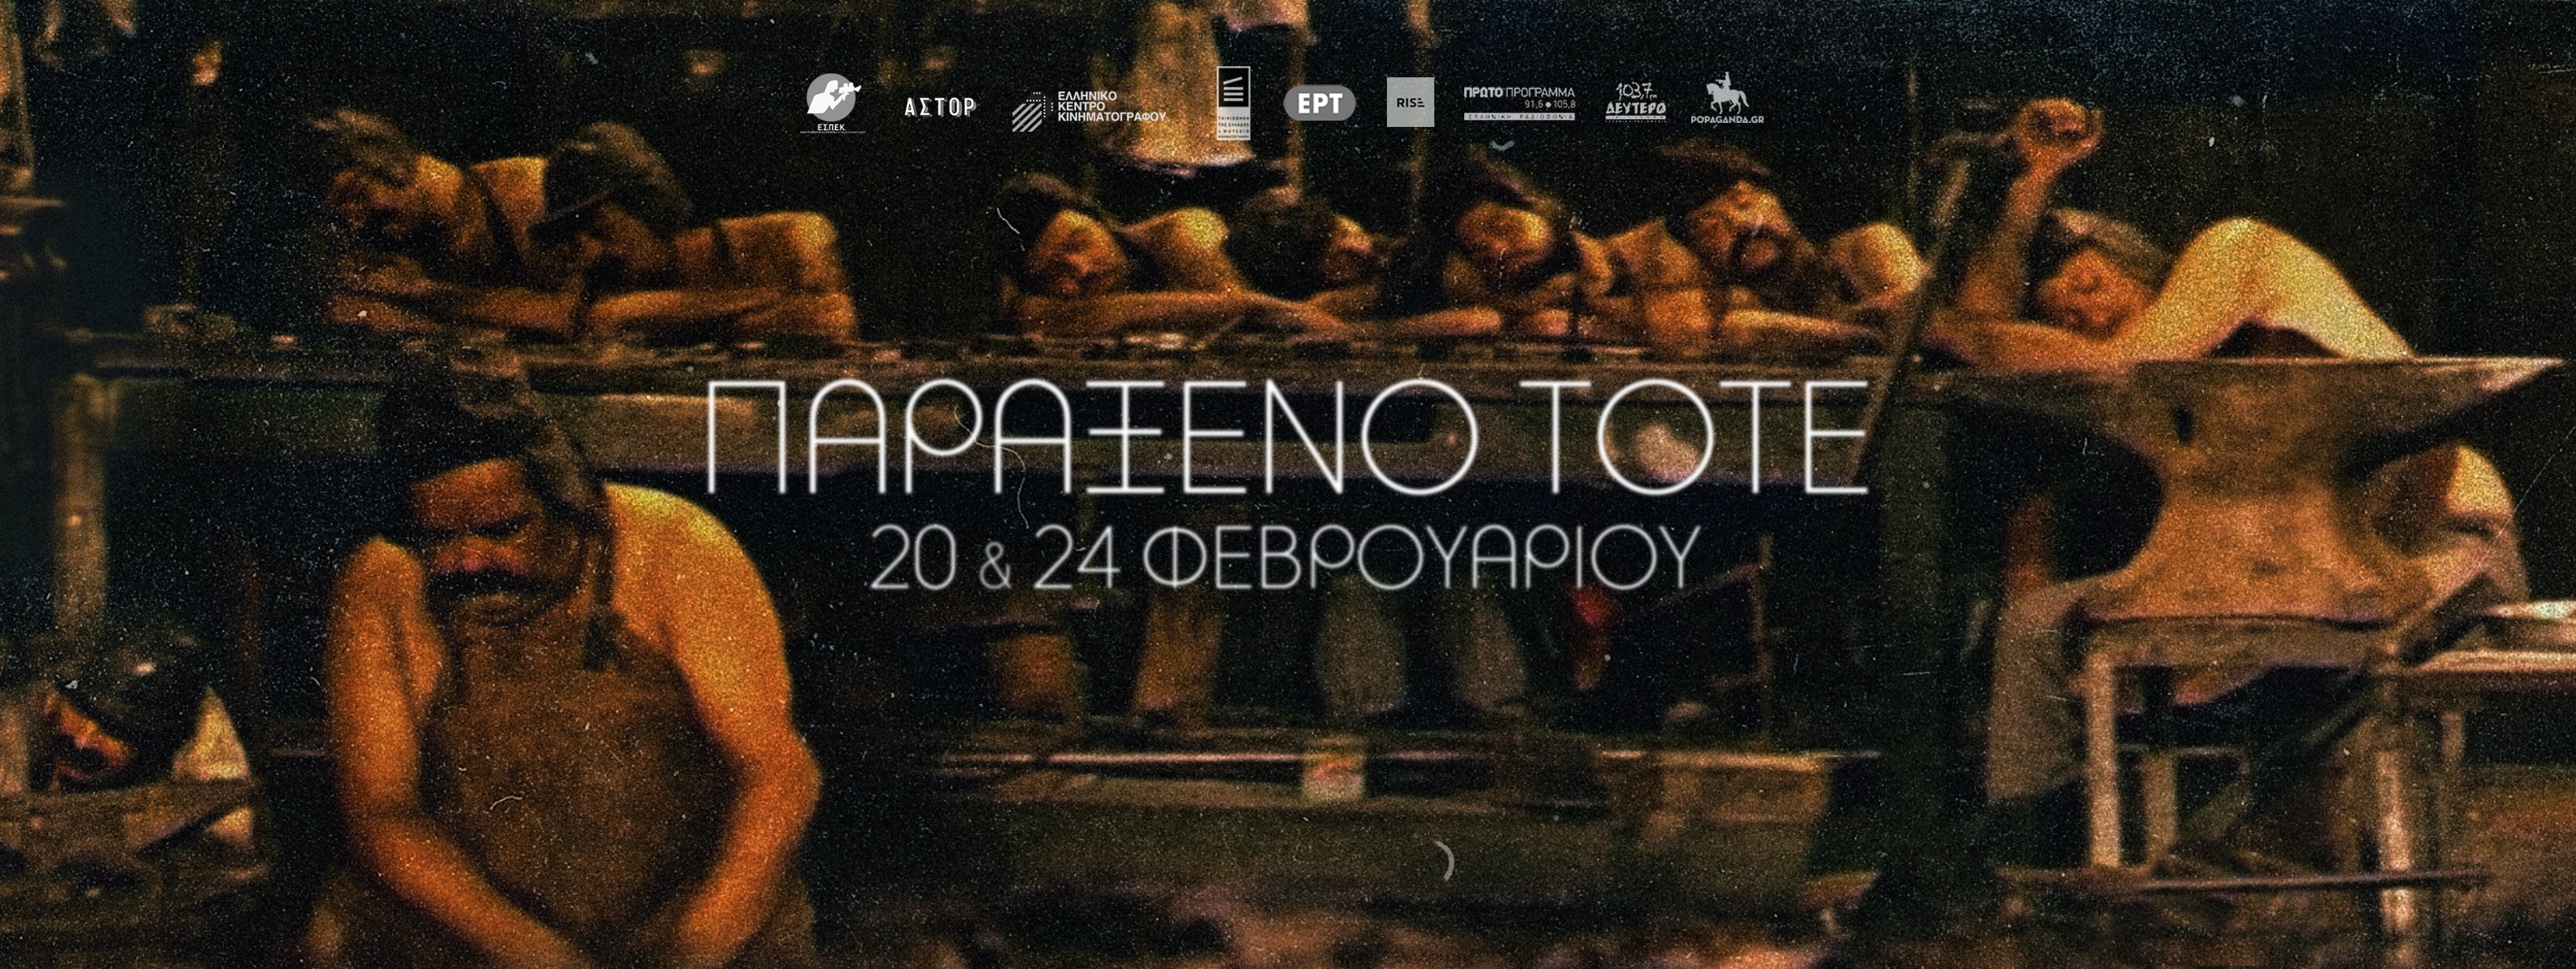 Χαμένη Λεωφόρος του Ελληνικού Σινεμά: Μέρος 4ο, «Παράξενο Τότε»